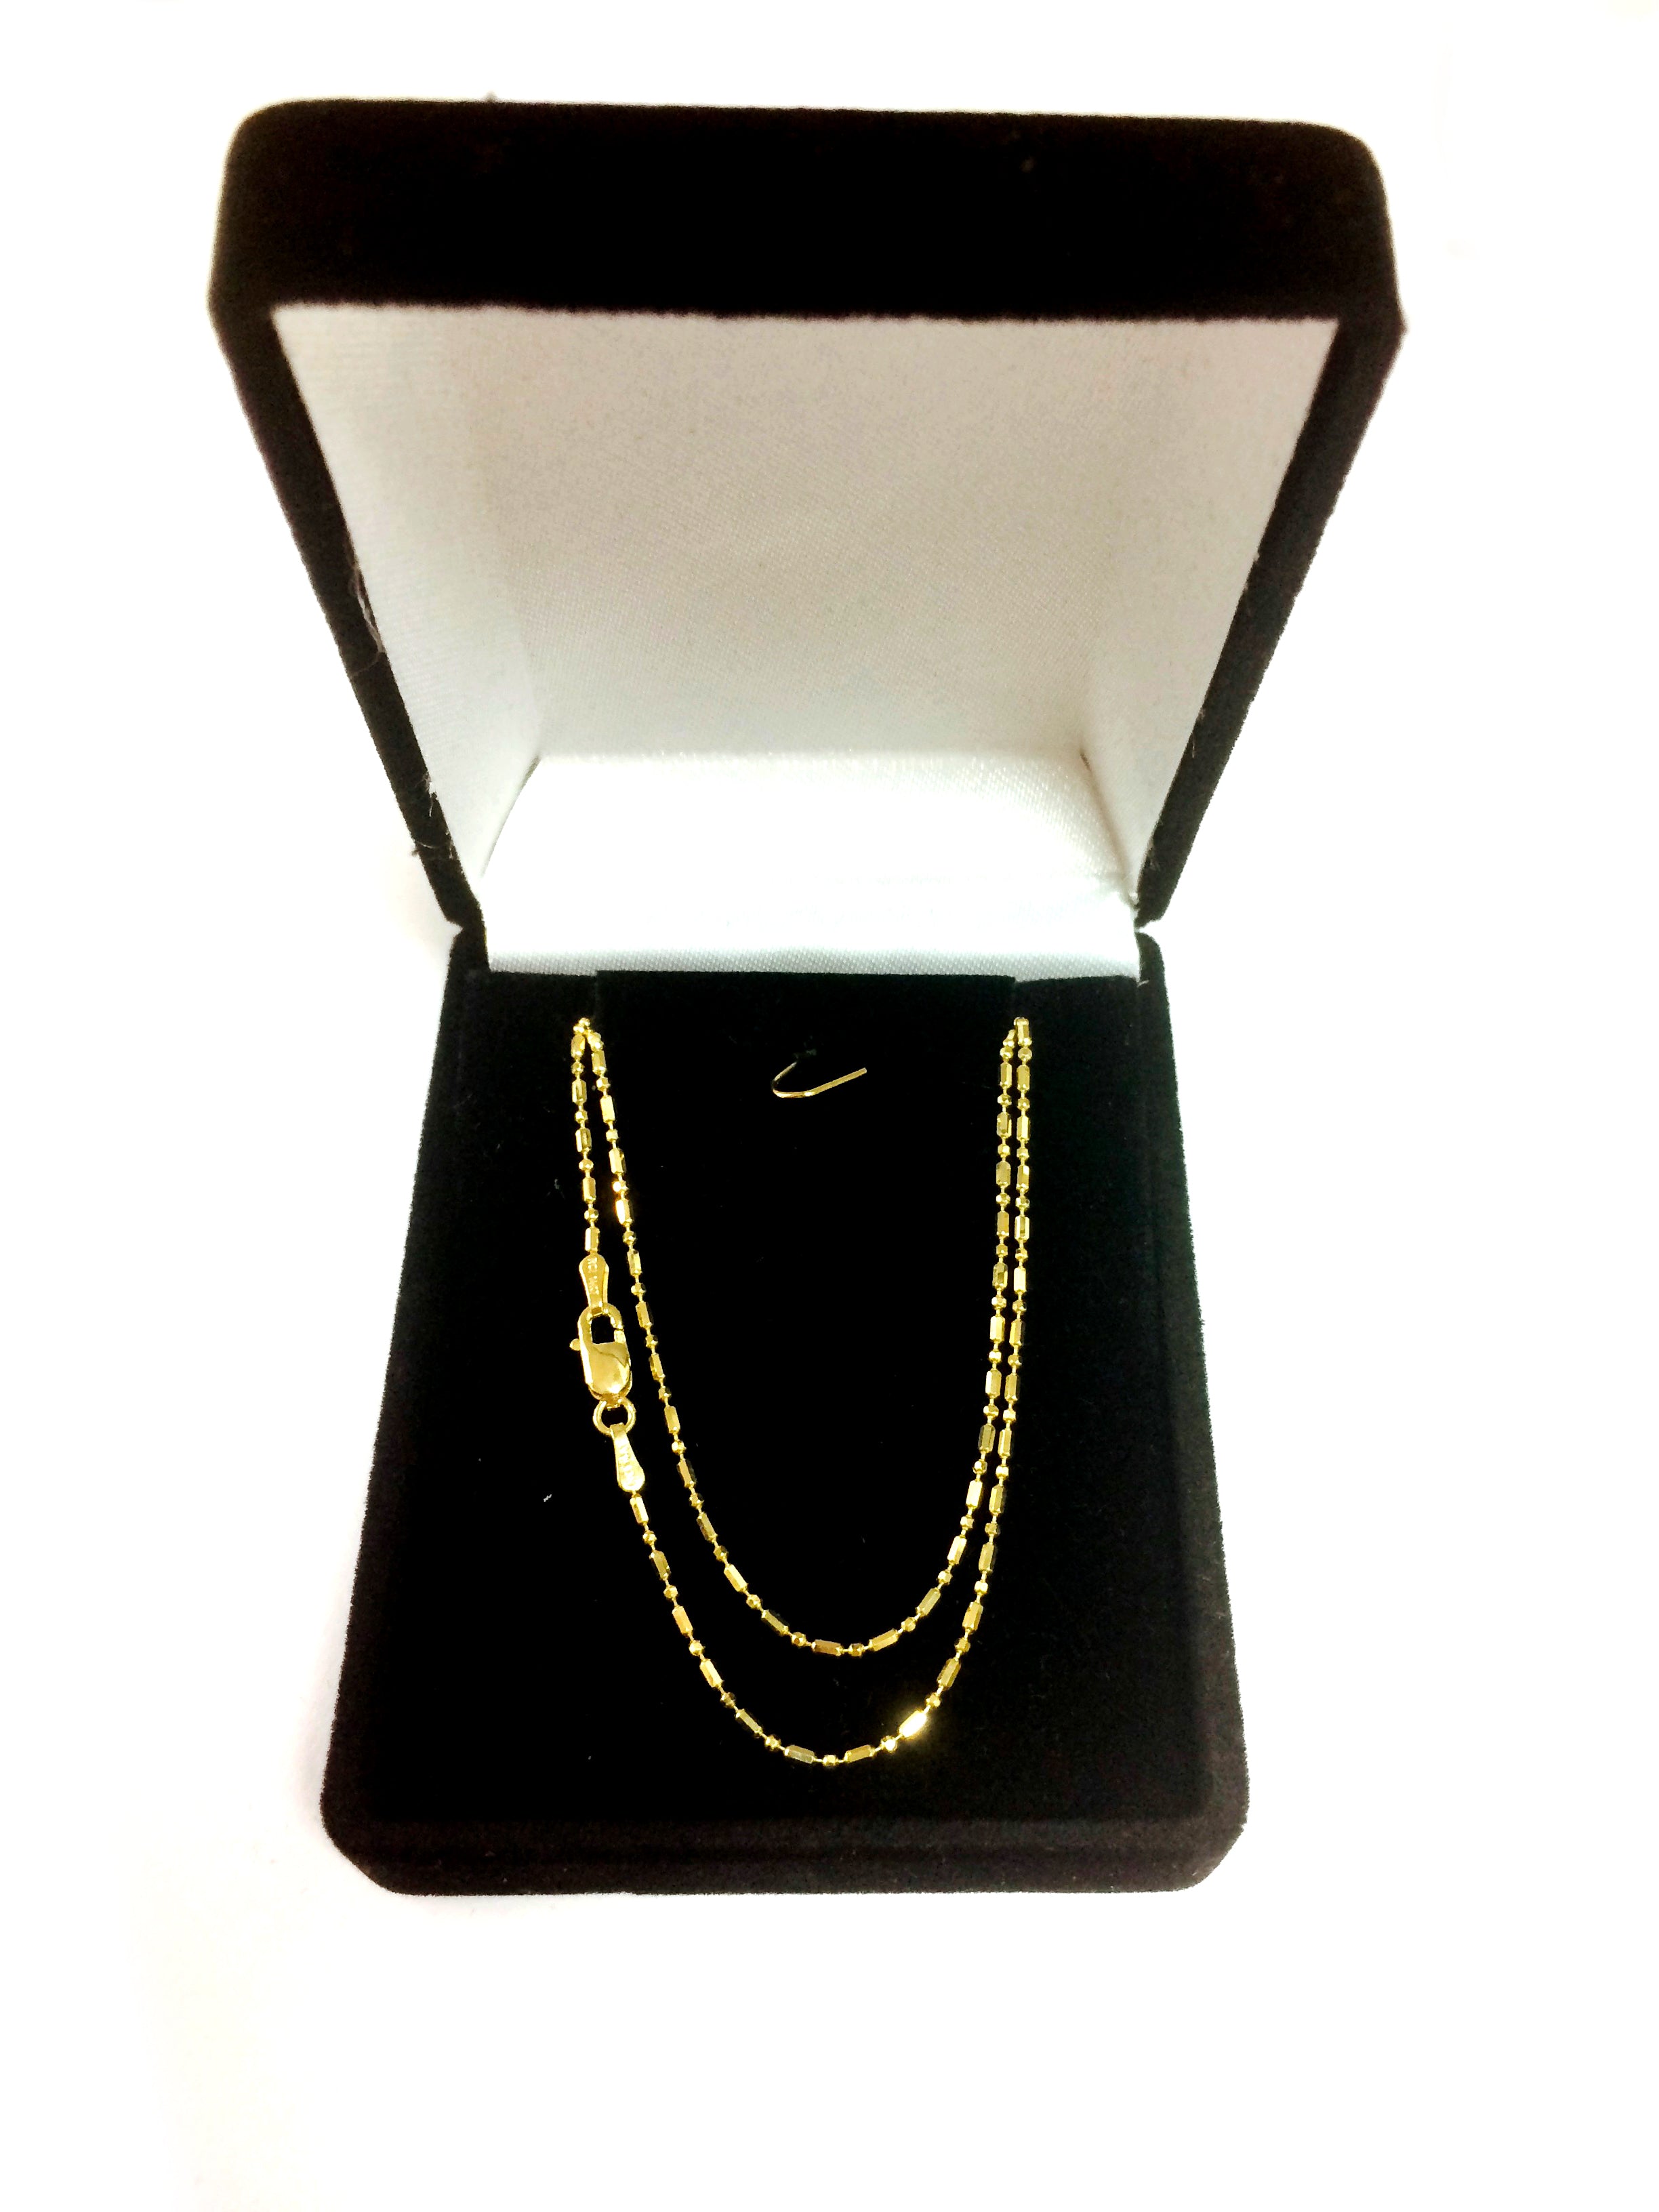 14k gult gull Diamond Cut Bead Chain Halskjede, 1,2 mm fine designersmykker for menn og kvinner